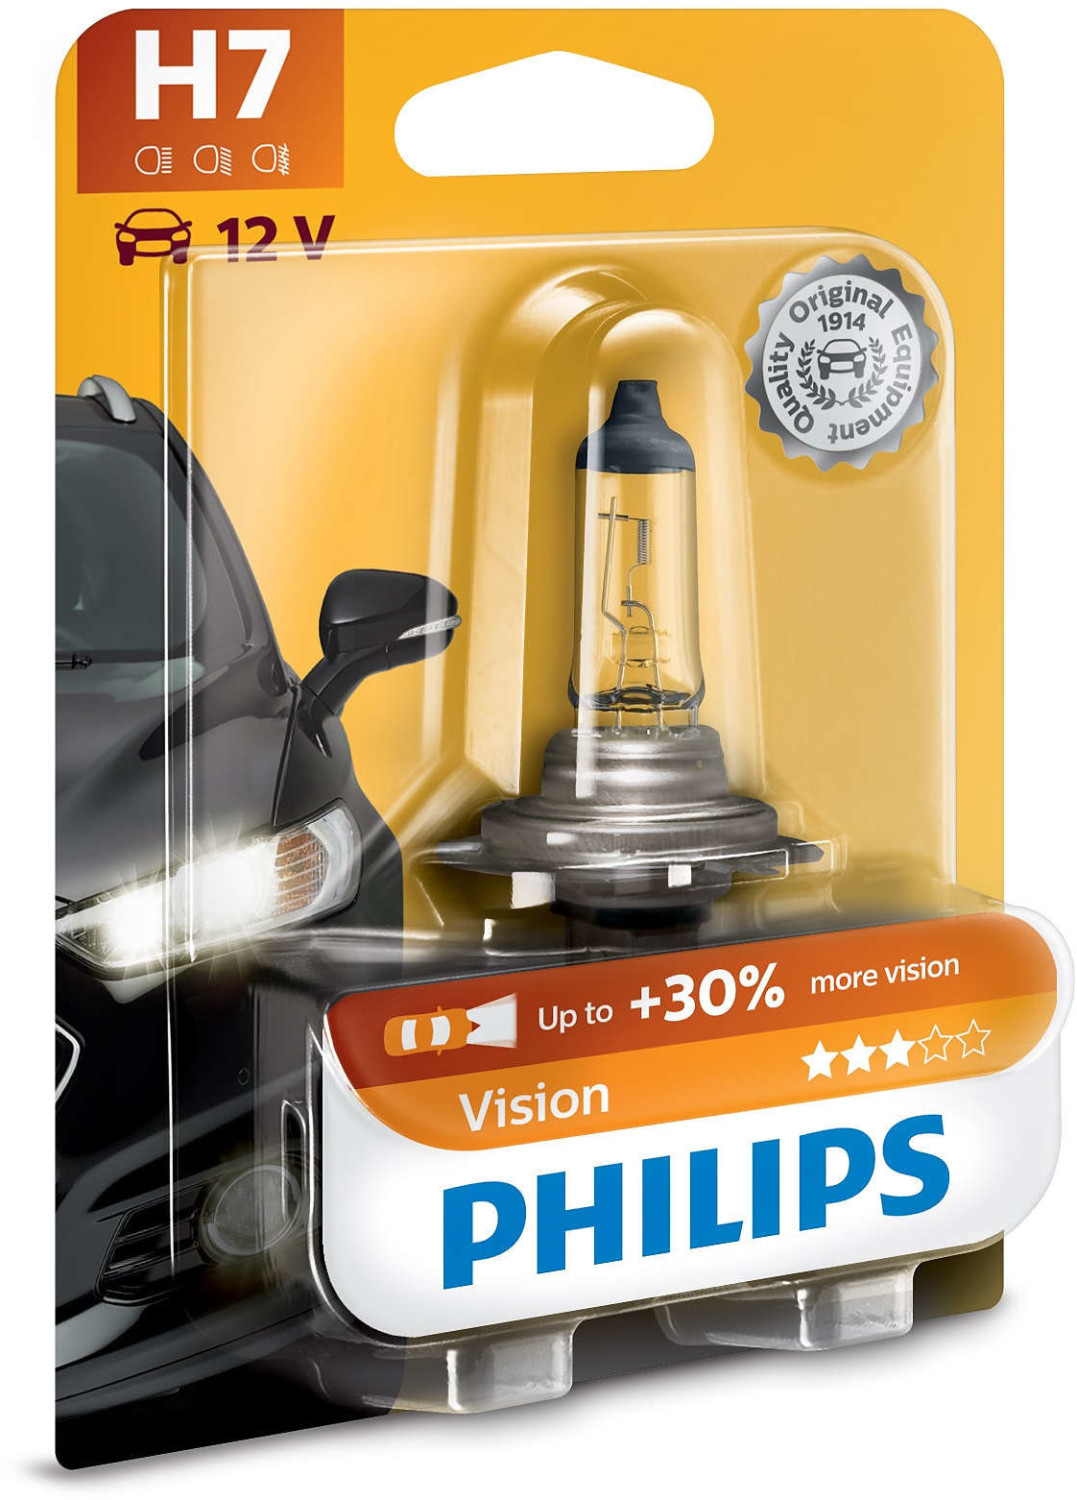 Philips White Vision ultra H7 Acheter chez JUMBO